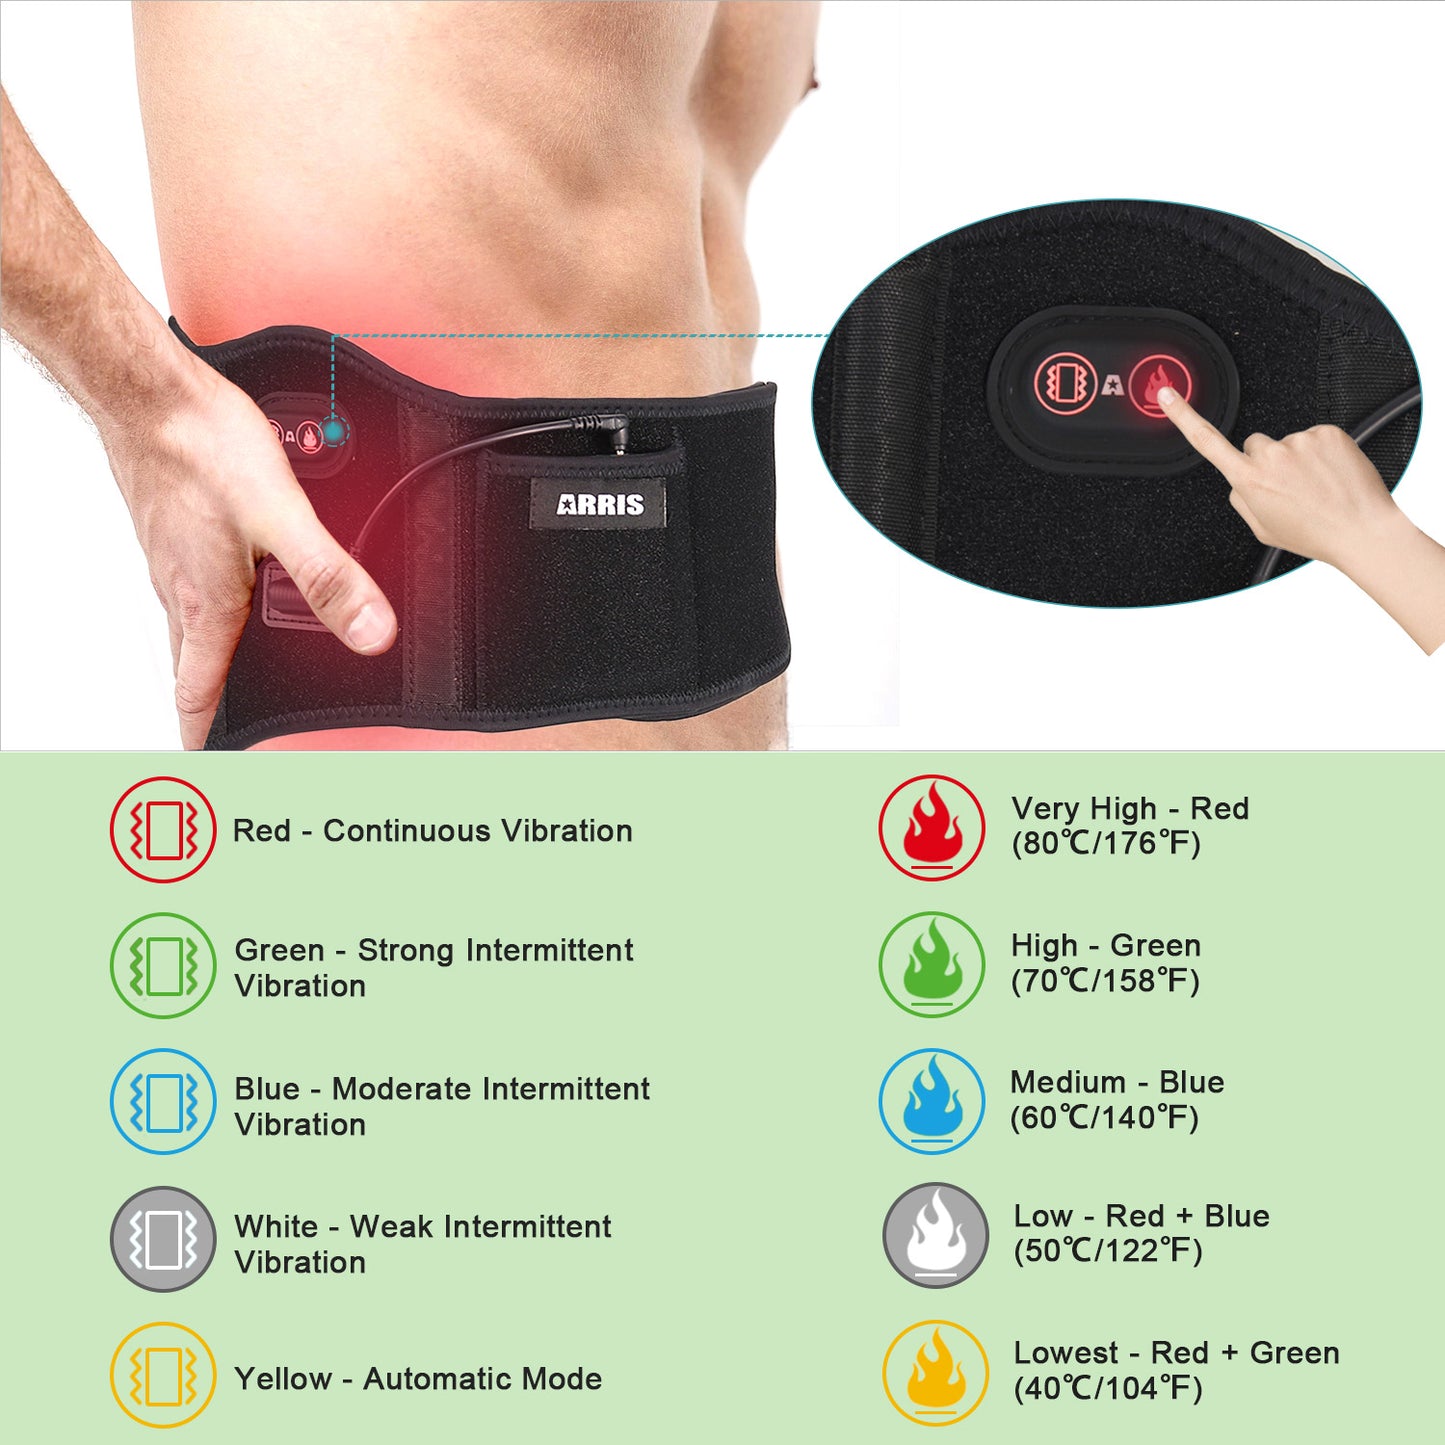 ARRIS 7.4V Battery Heating Massage Back Belt Wrap with Vibration Massager